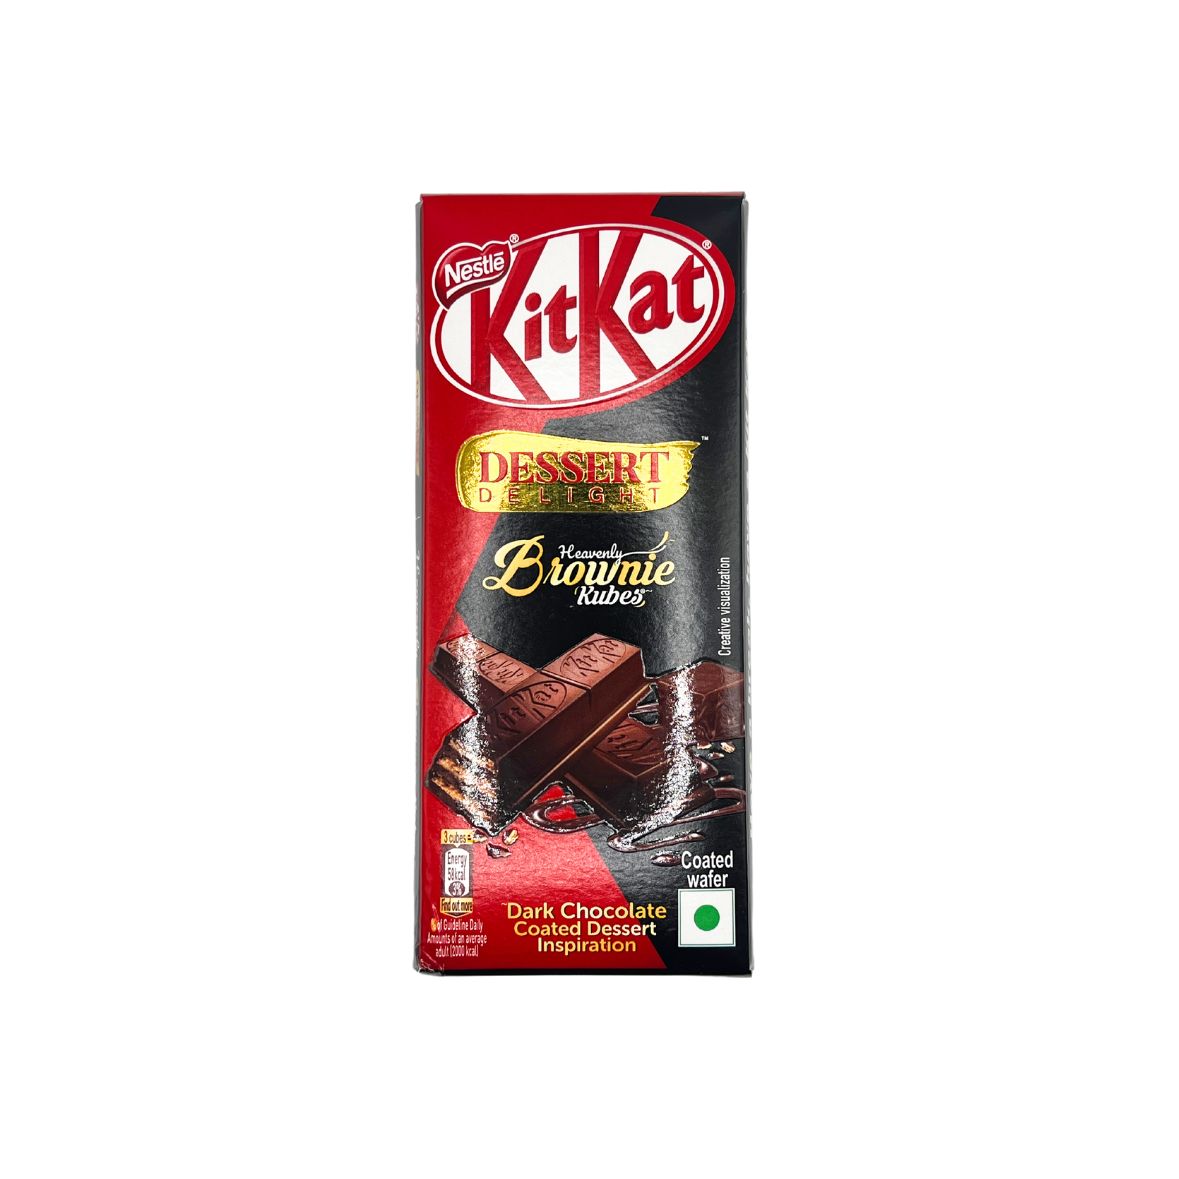 KitKat - Brownie Kubes Desert Delight